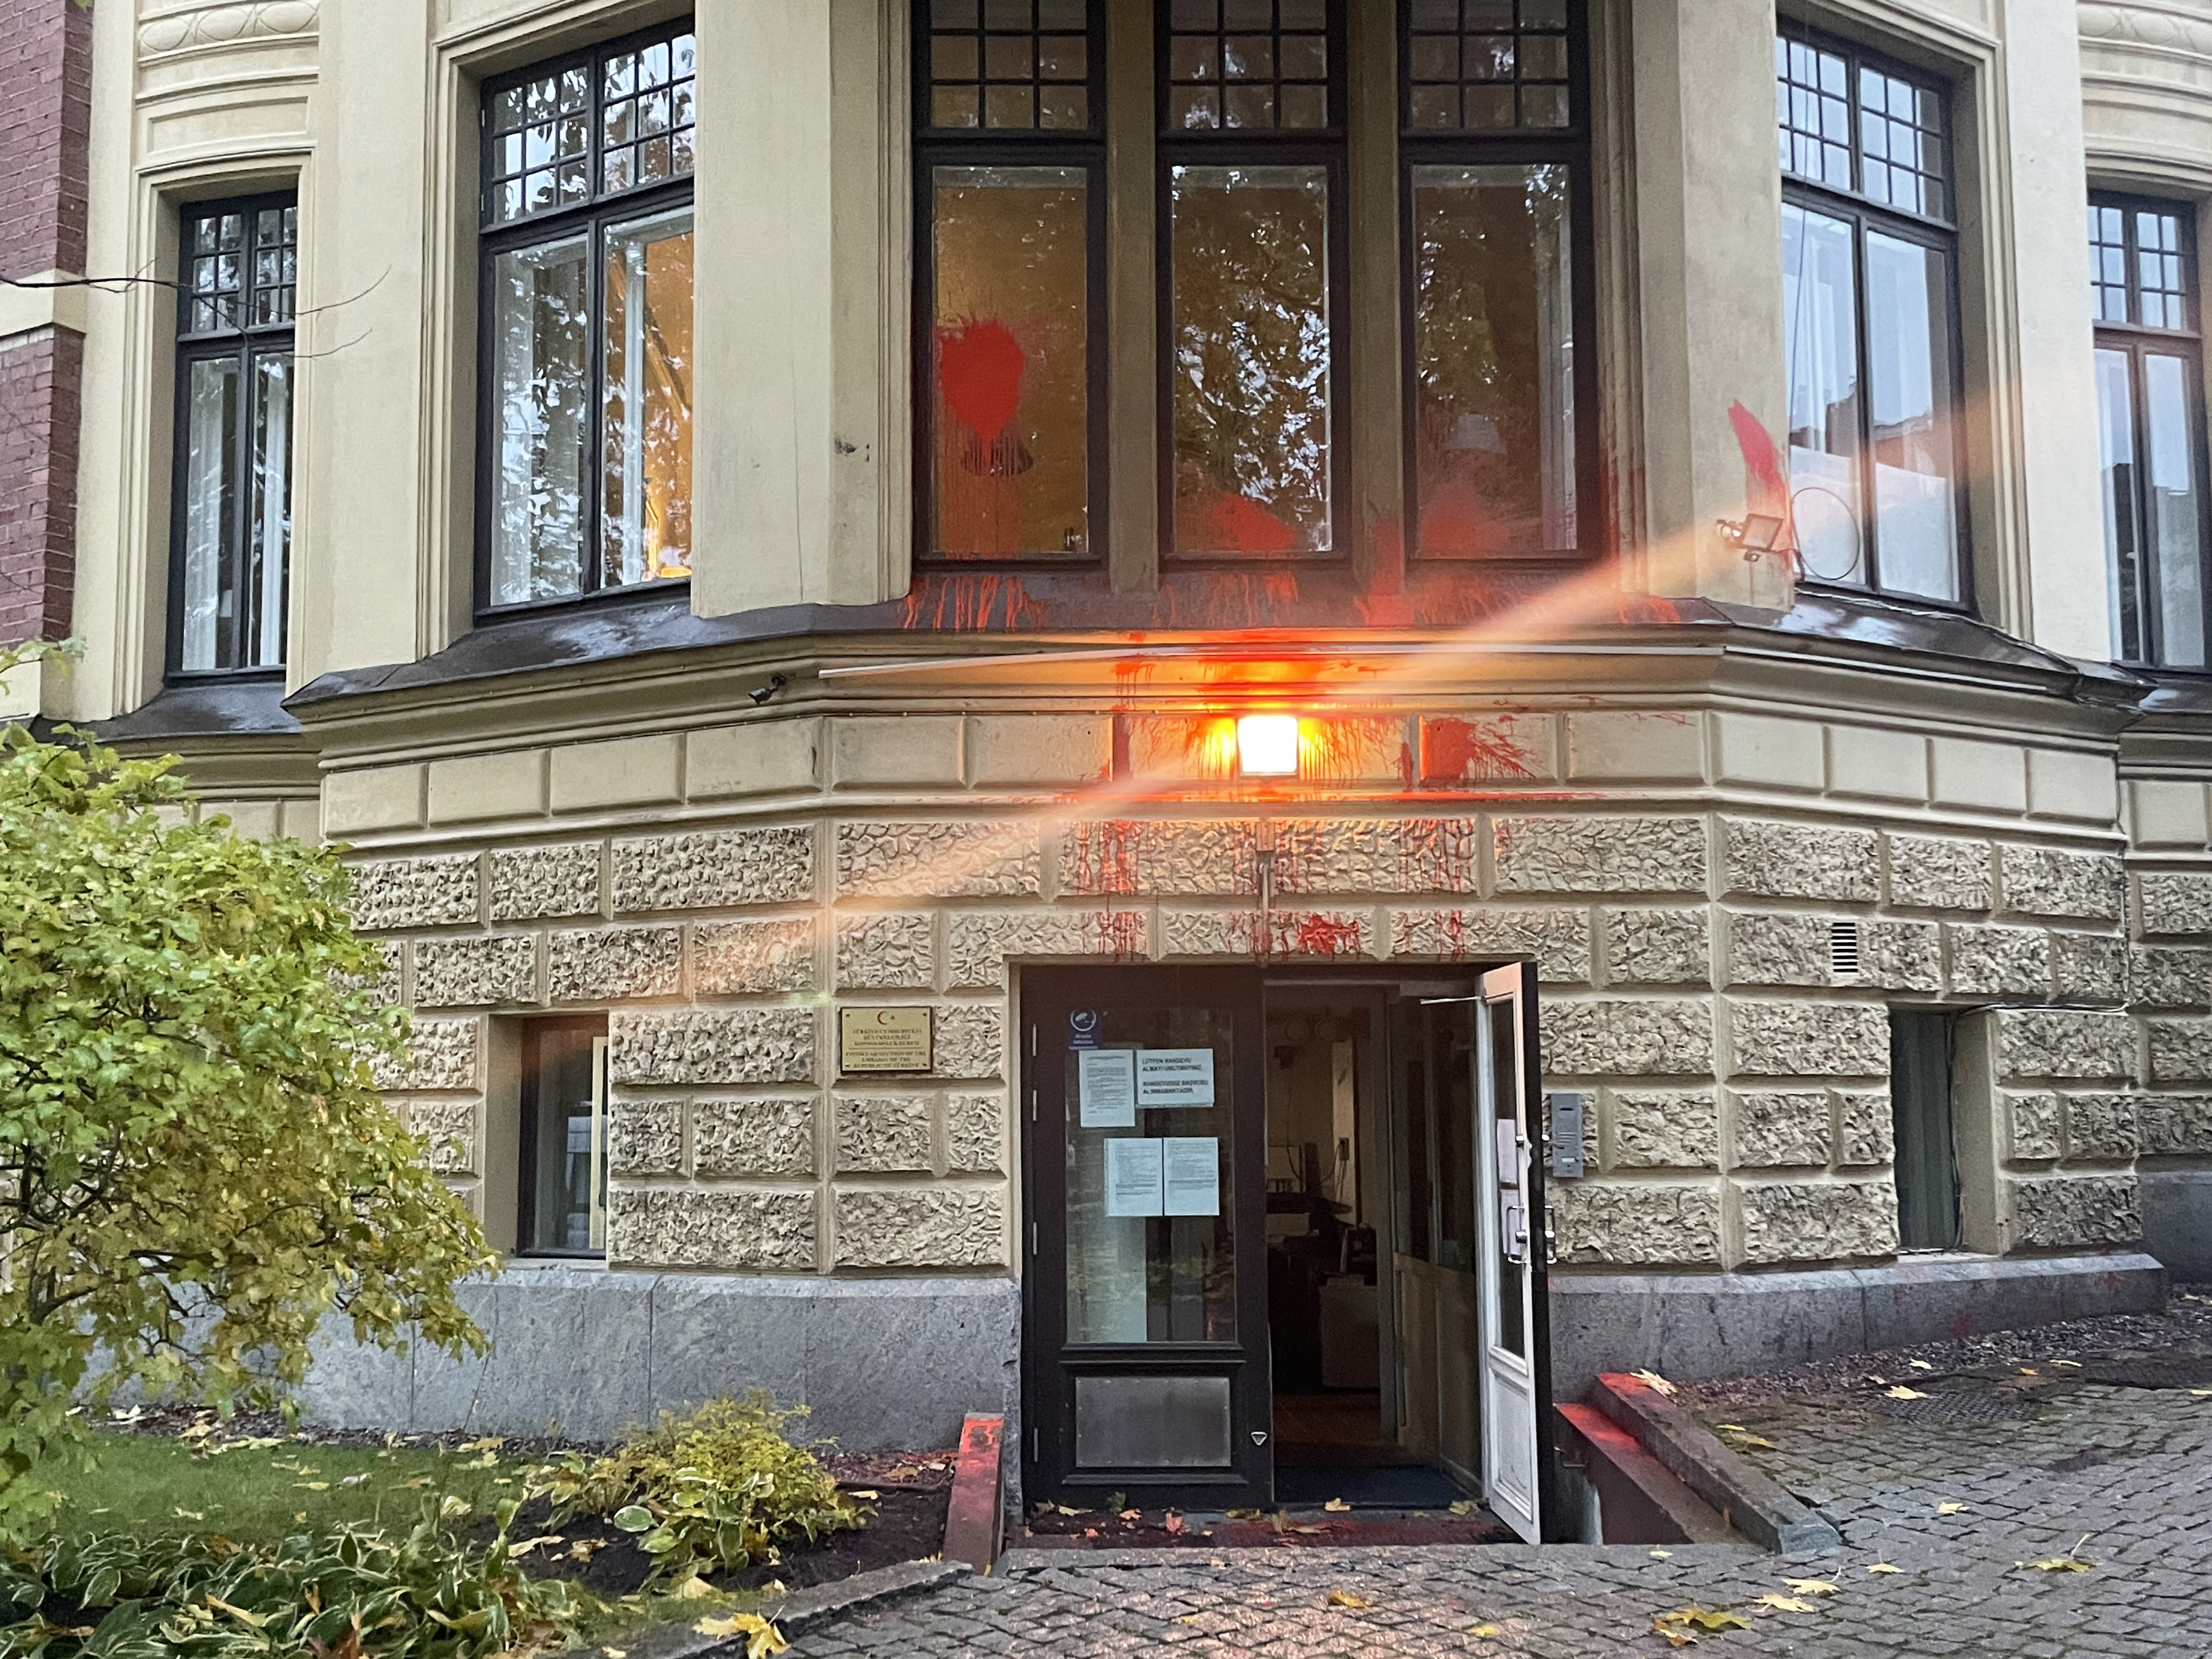 Policía: se arrojó un posible "cartucho de humo" en la embajada de Turquía en Helsinki